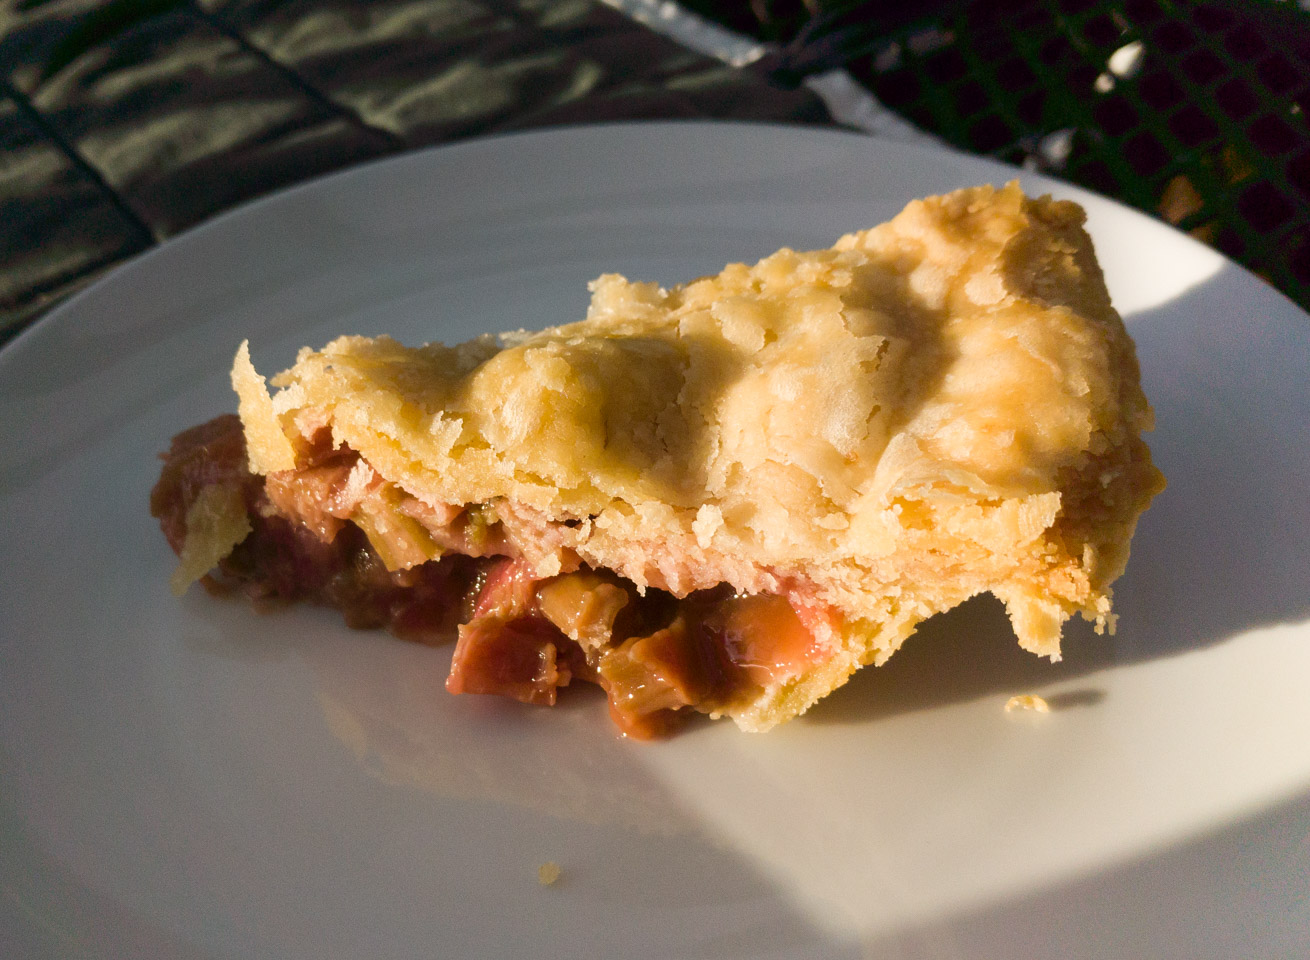 A piece of rhubarb pie